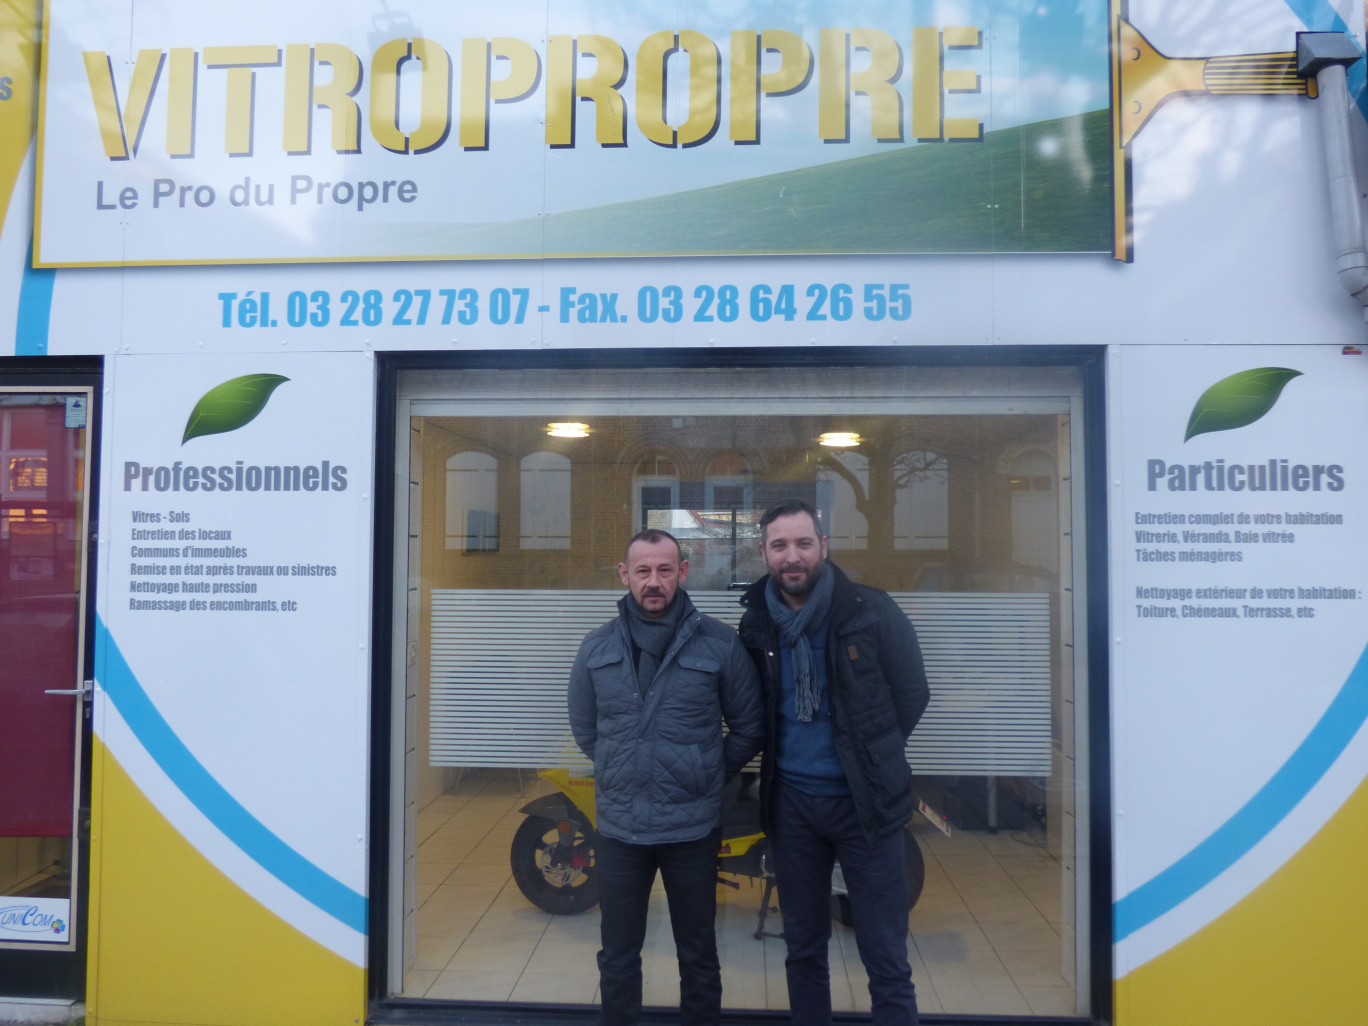 André Vérove (à gauche) a fondé Vitropropre en 2008 avant de s’associer à Francisco Pires (à droite) et d’élargir la gamme des services proposés.